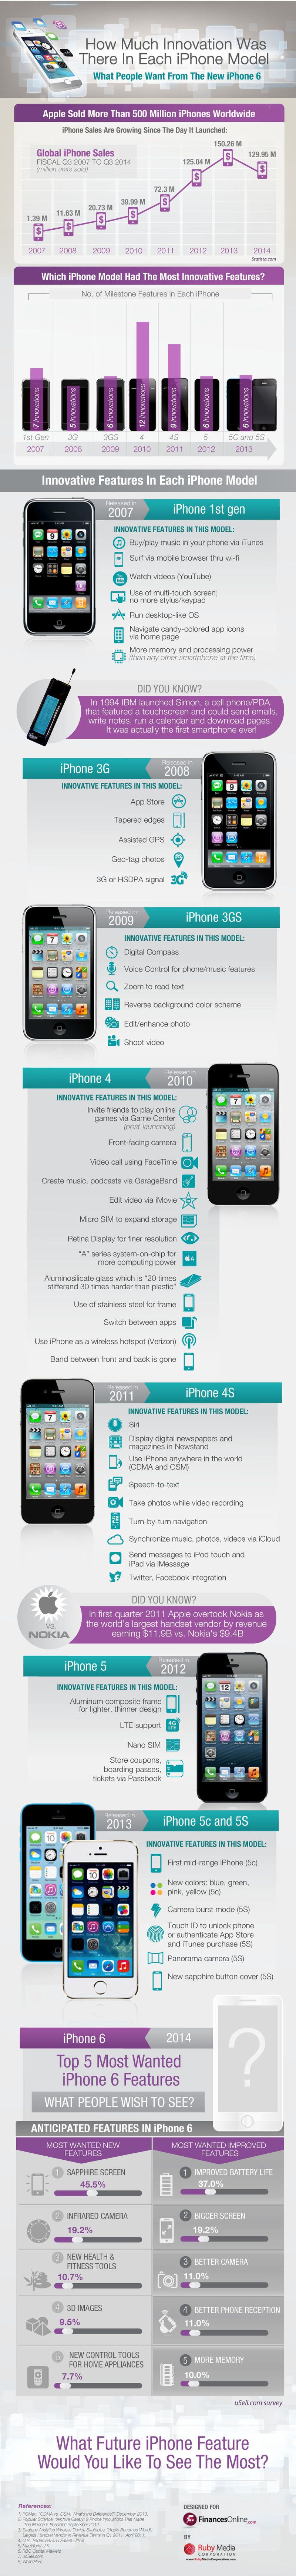 Combien d'innovations ont apporté chaque modèle d'iPhone de l'iPhone 1 à l'iPhone 6? [infographie]